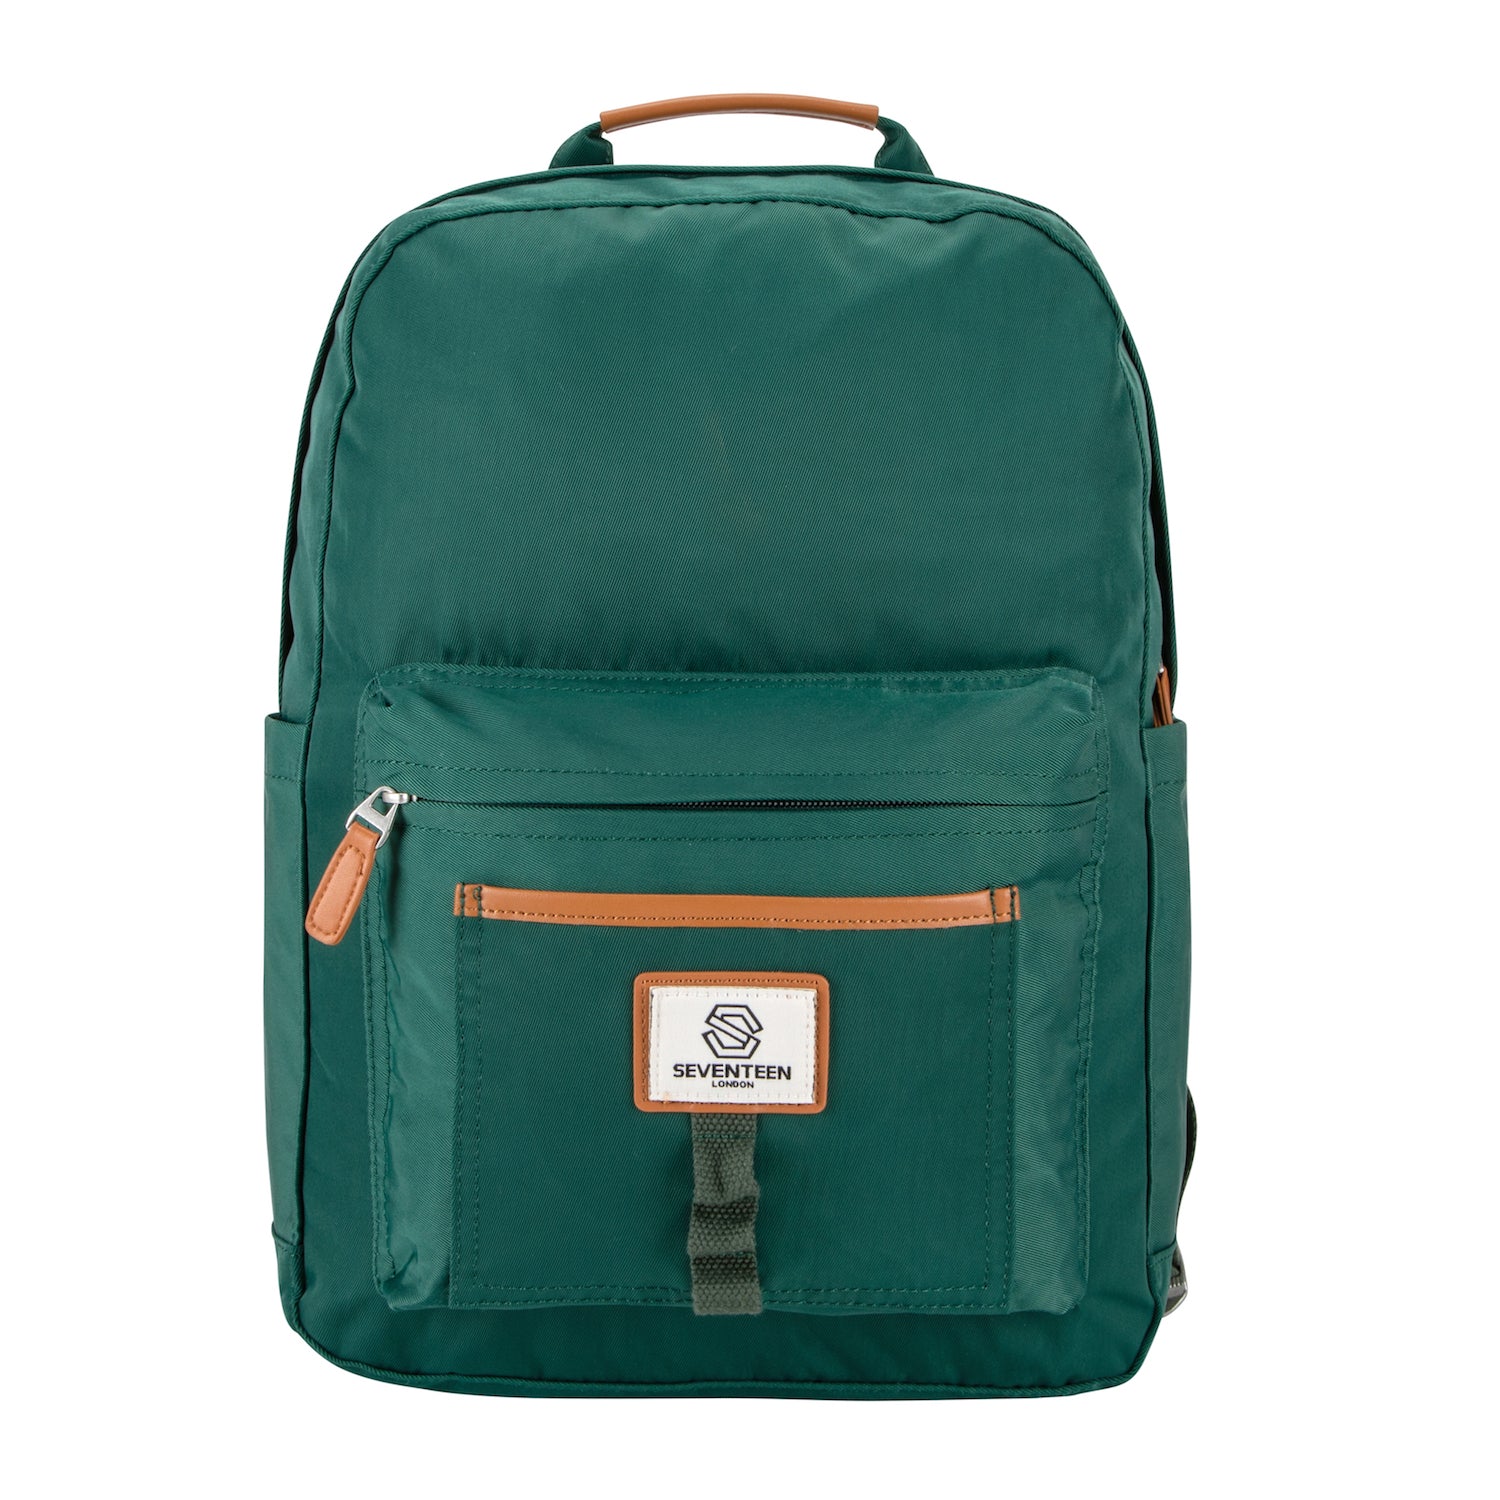 Knightsbridge Backpack - Emerald Green